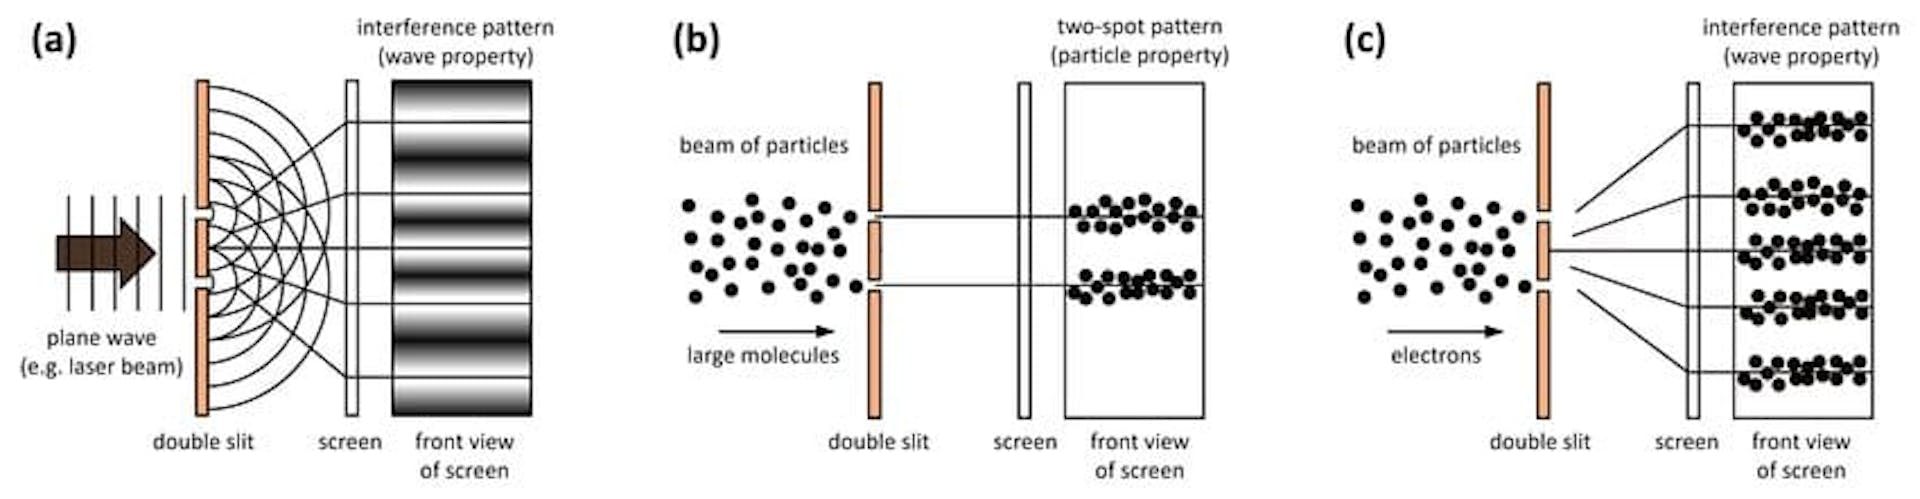 来源：https://www.researchgate.net/figure/Double-slit-experiment-with-a-photons-b-very-large-particles-c-electrons_fig1_349125115